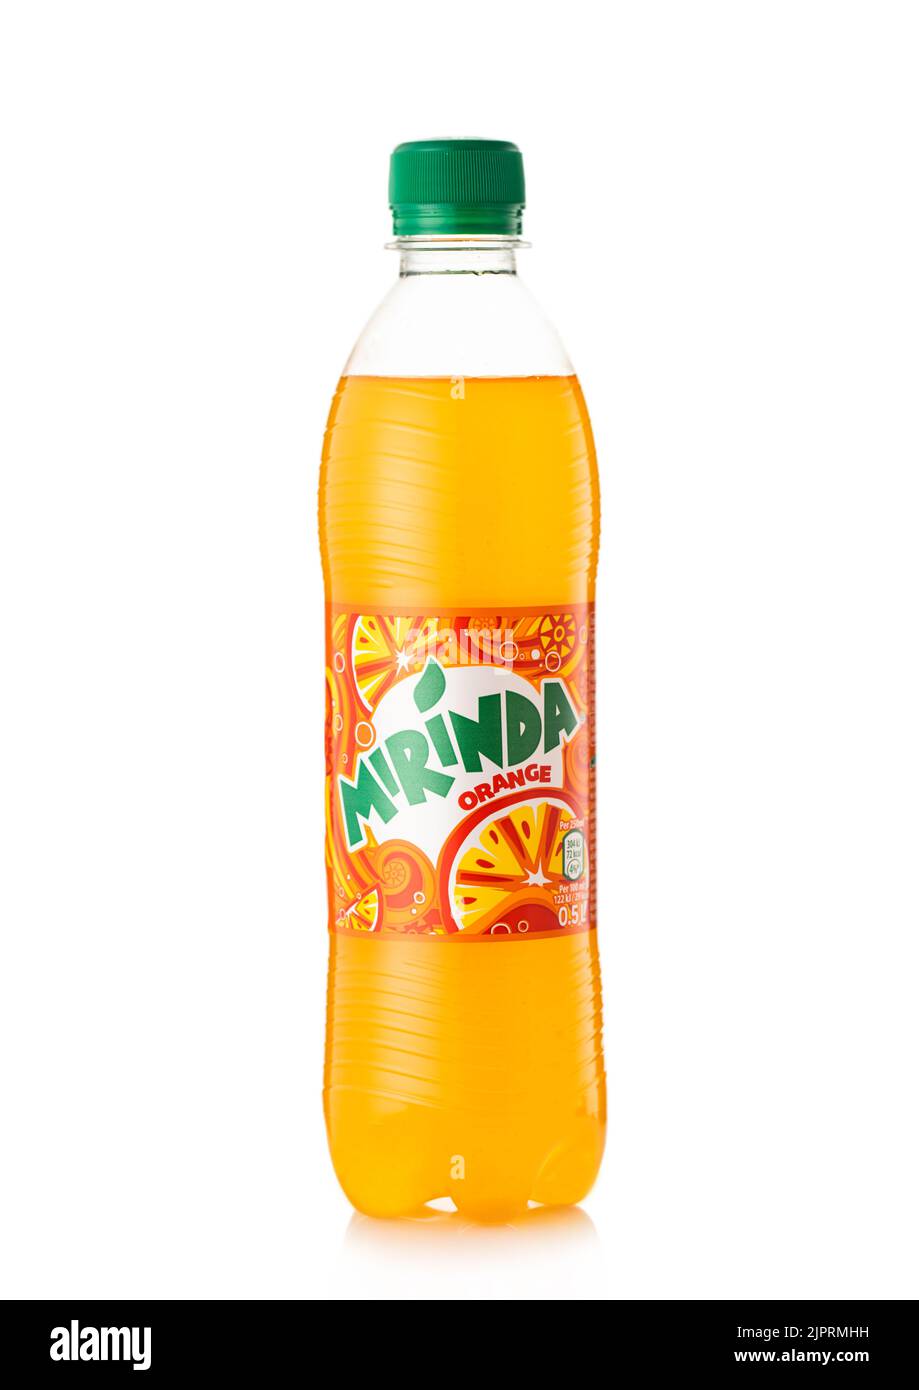 LONDON,UK - MAY 12, 2022: Plastic bottle of Mirinda original orange soda on white. Stock Photo